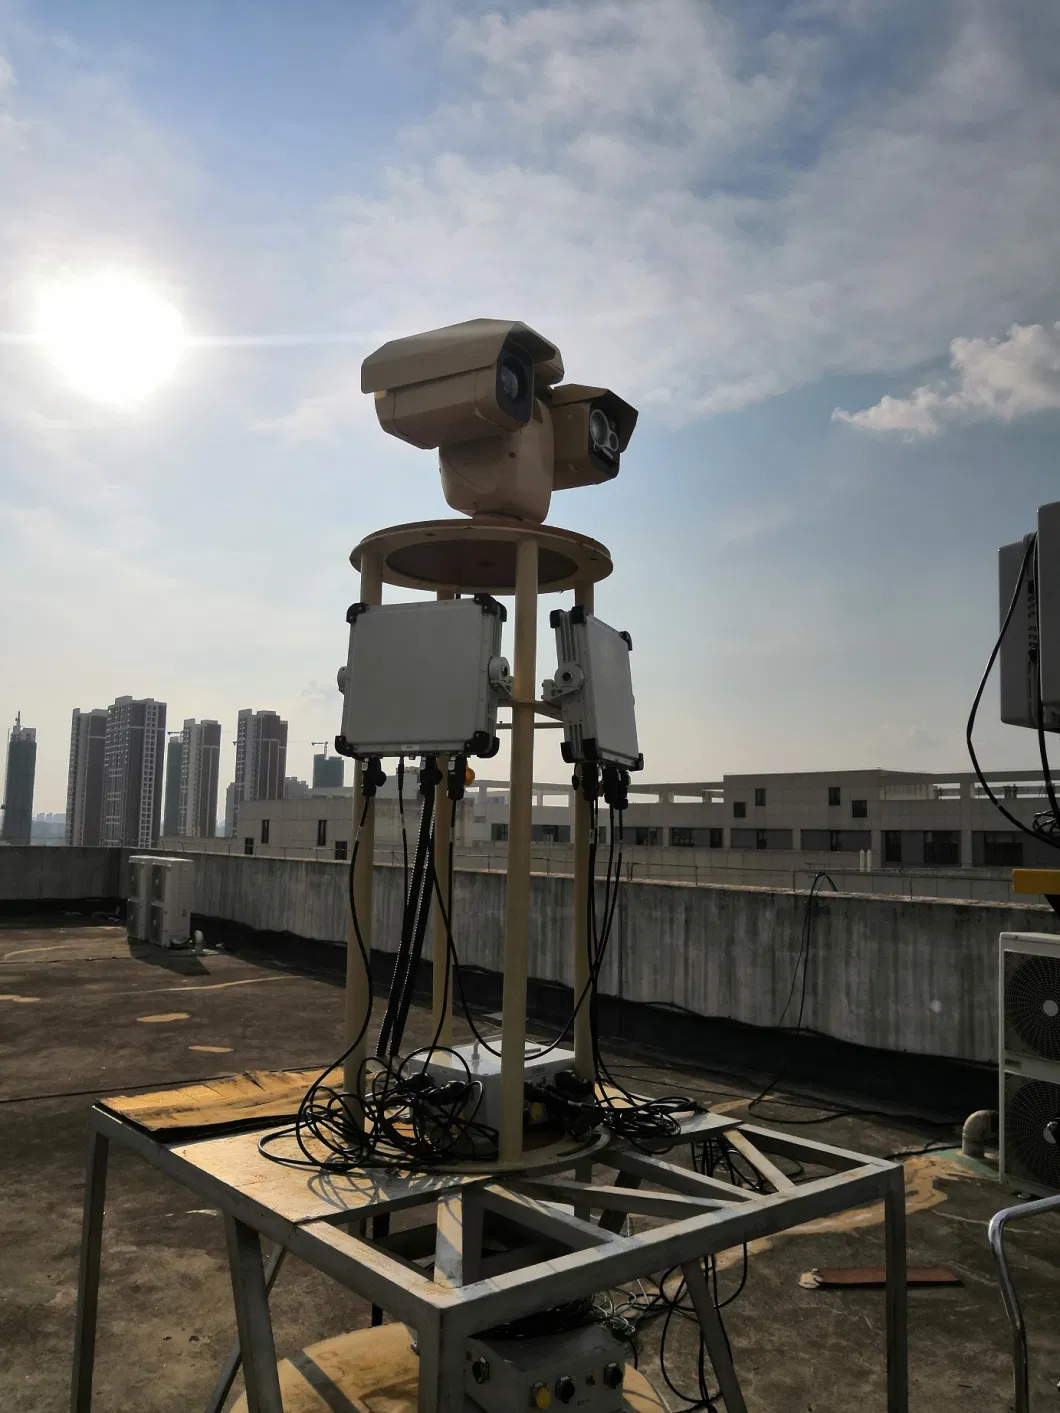 Man-Portable MID-Range Ground Surveillance Radar